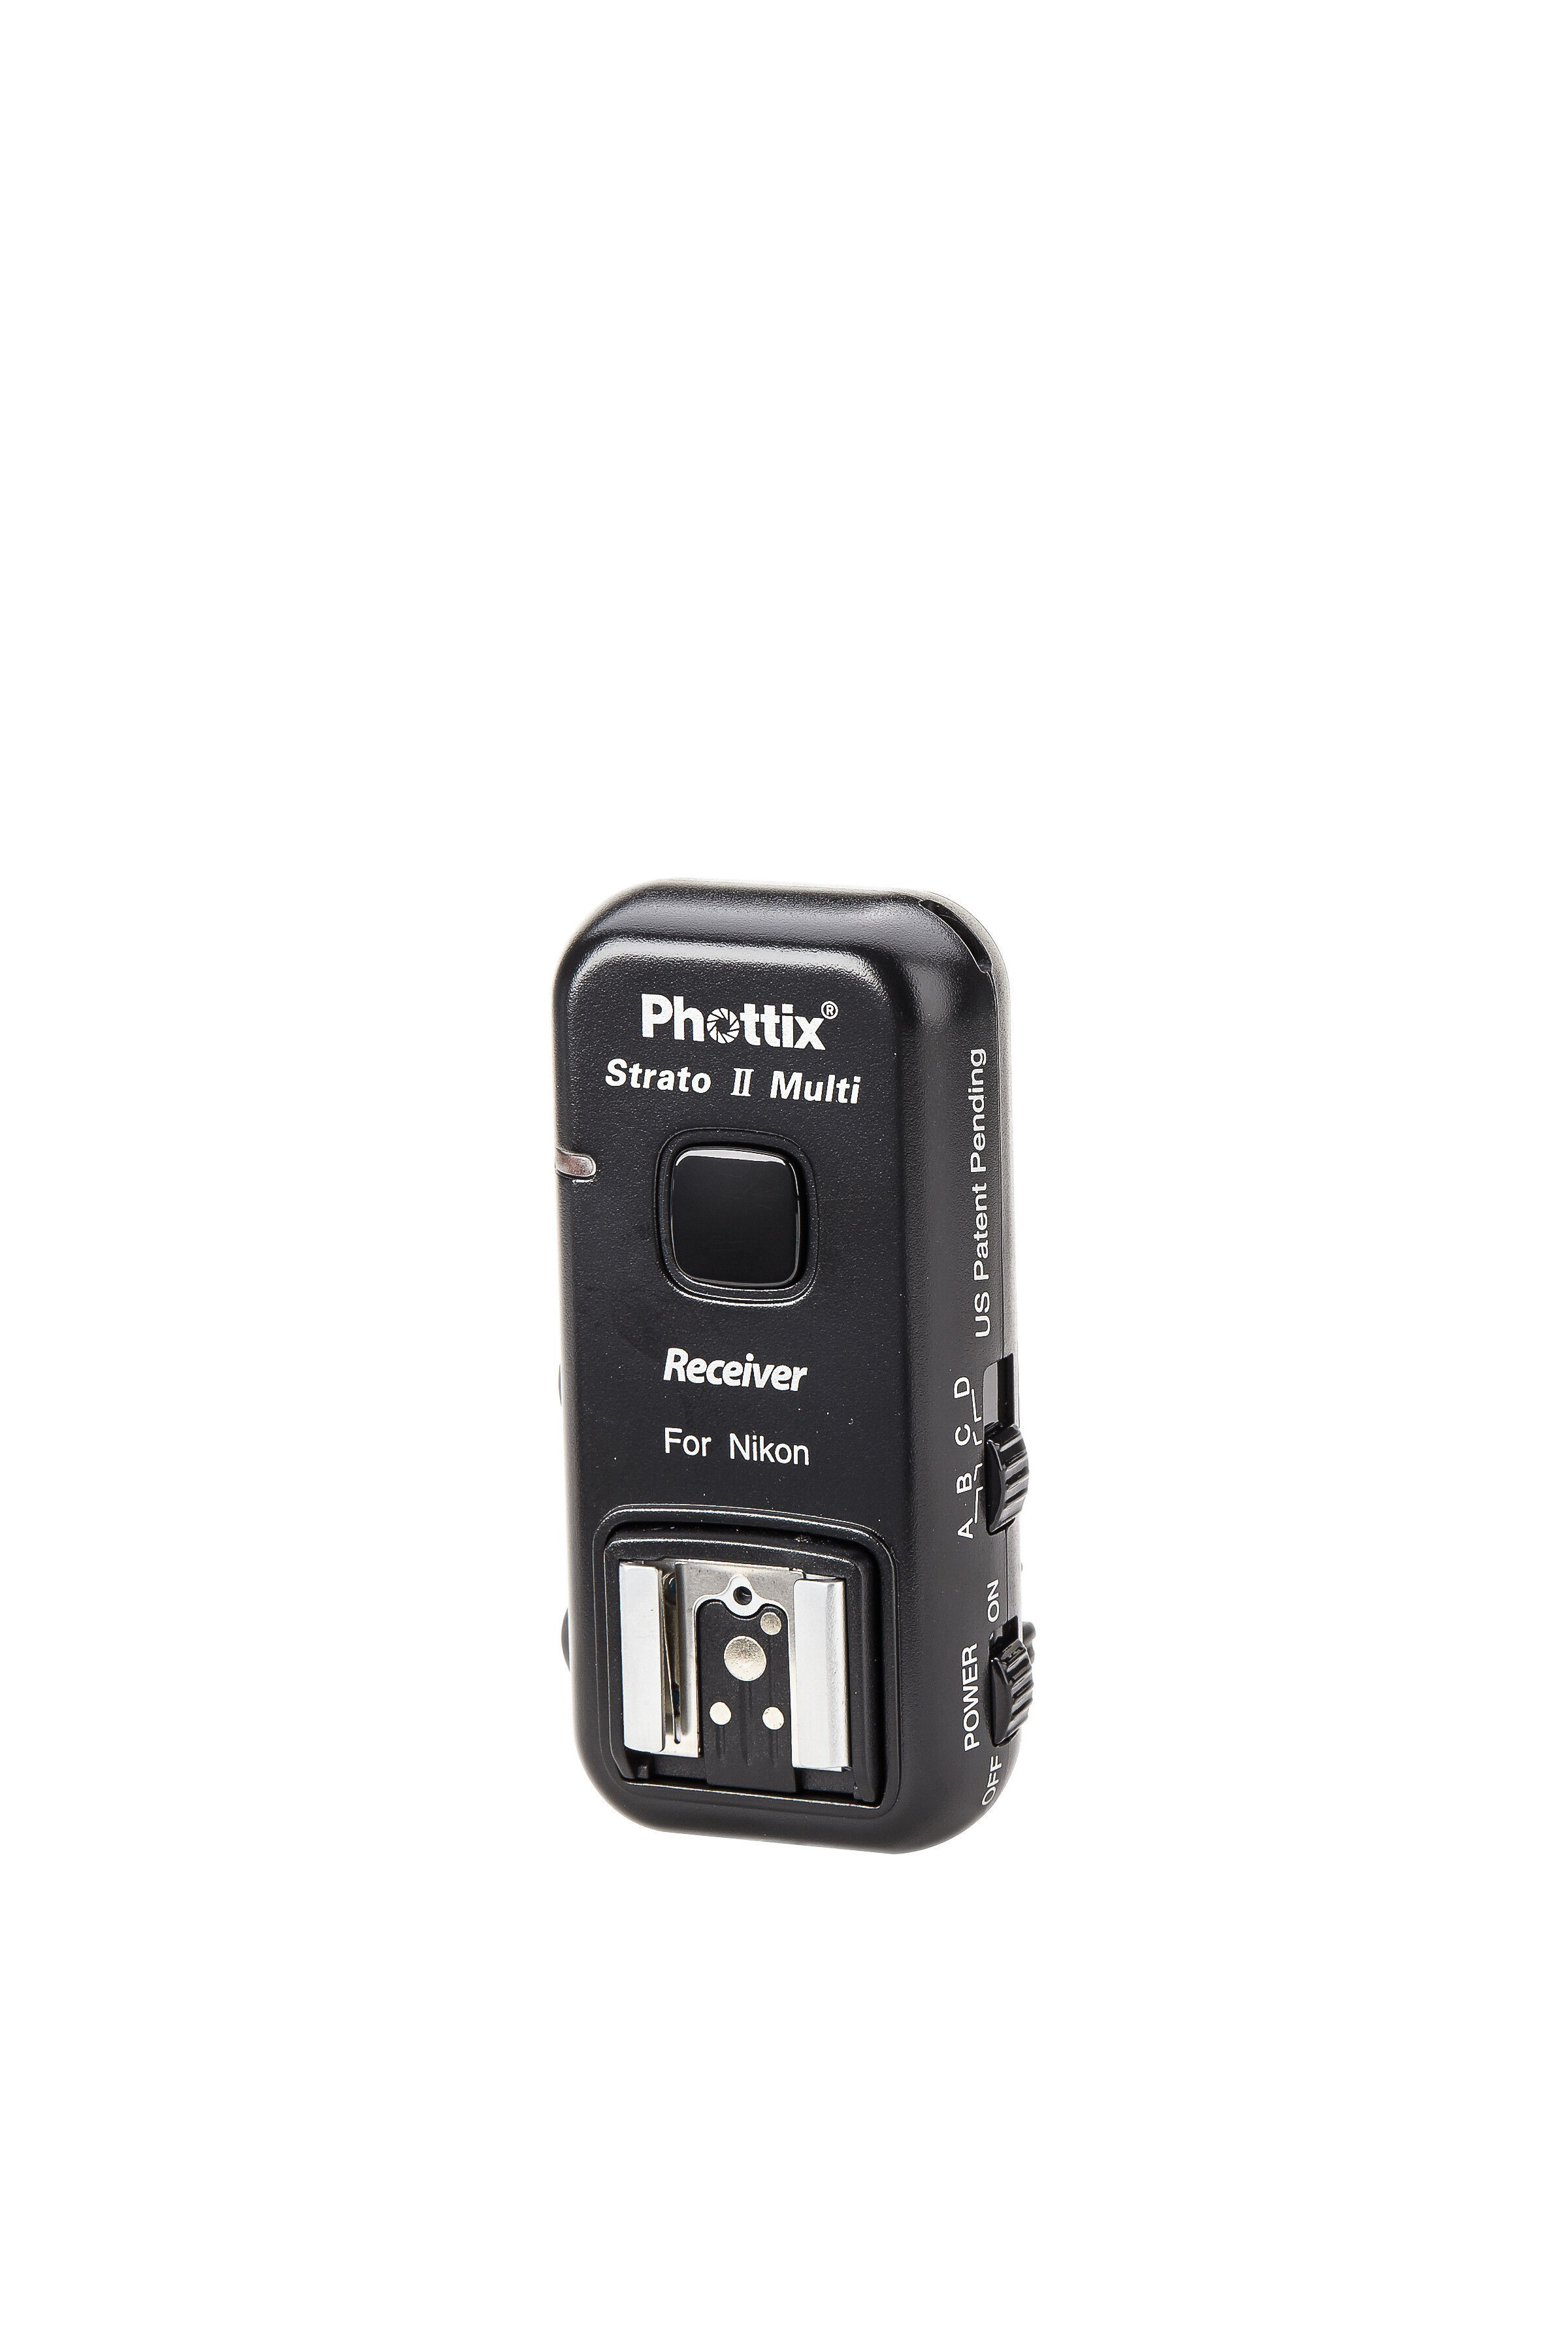 Phottix Strato II Multi 5-in-1 Receiver for Nikon - For Niko